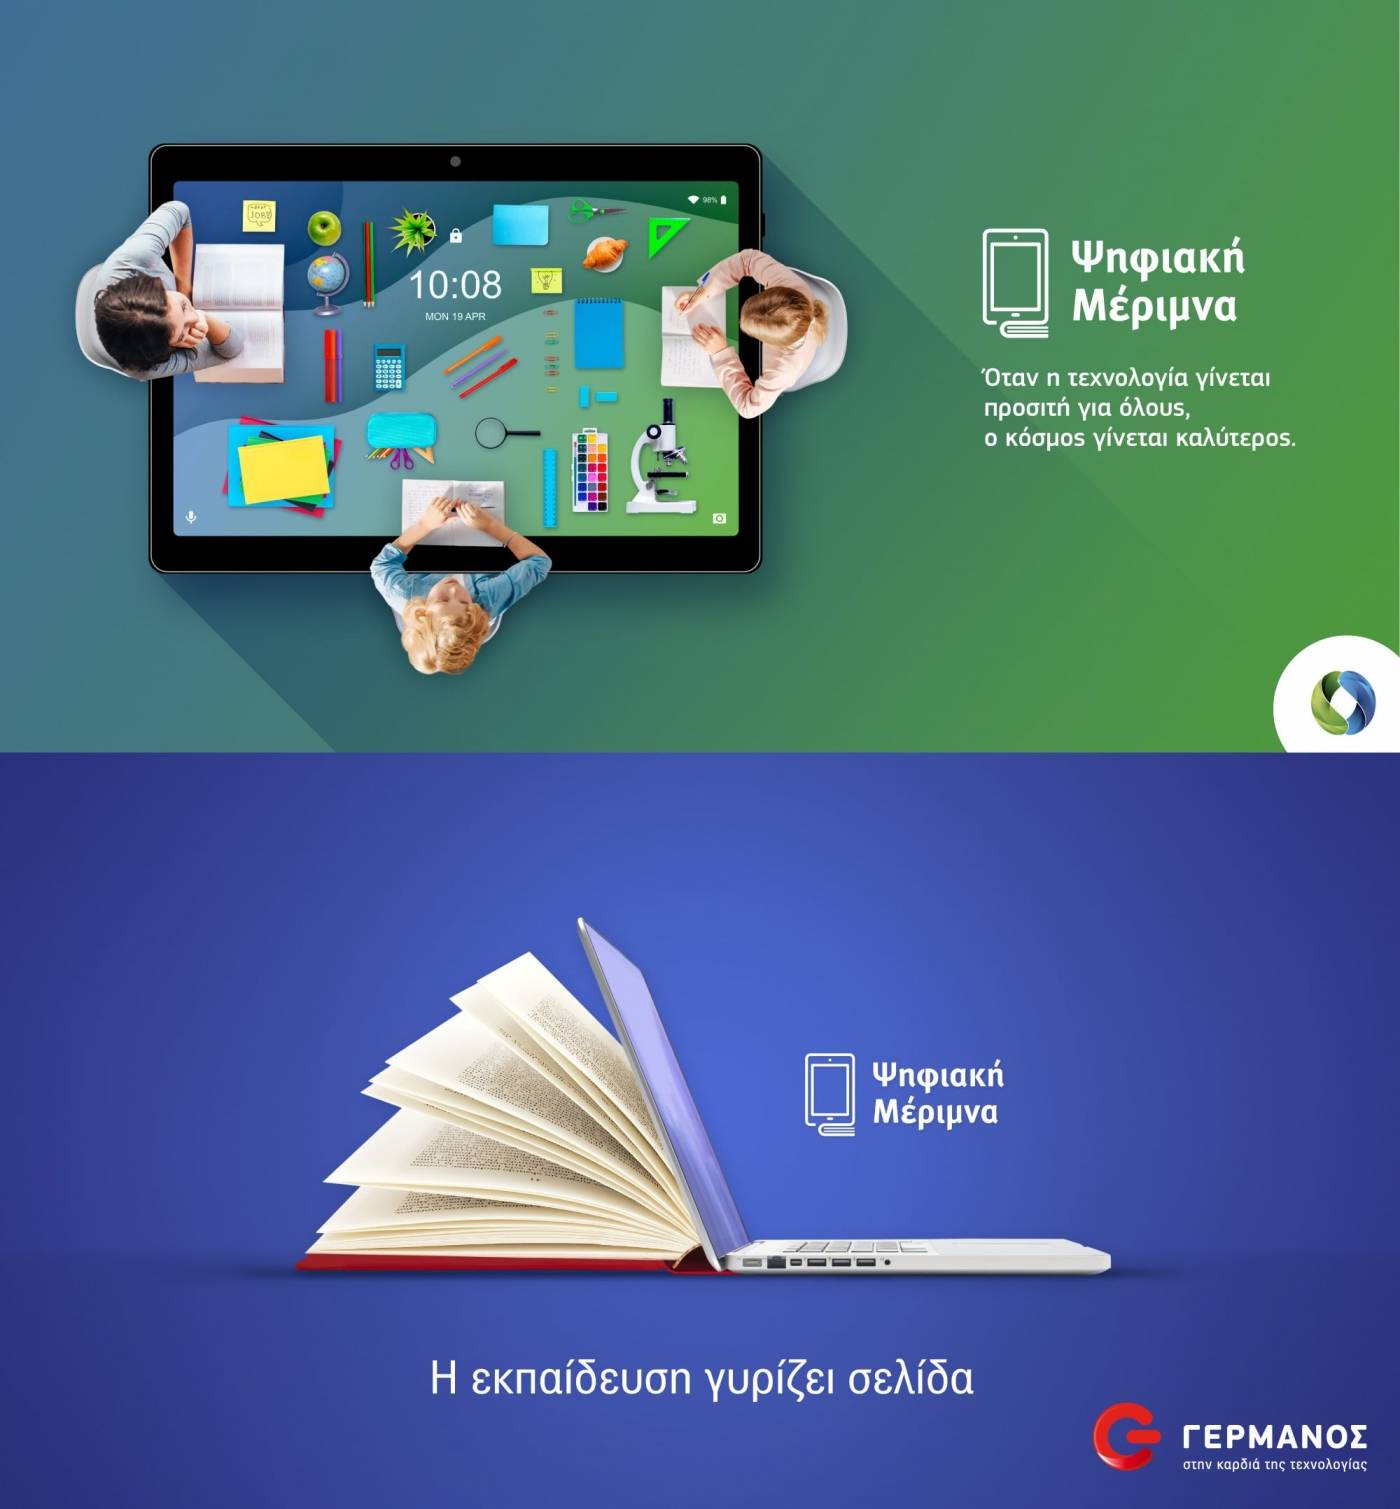 «Ψηφιακή Μέριμνα» -  COSMOTE, ΓΕΡΜΑΝΟΣ: Voucher 200 ευρώ για tablet ή laptop σε μαθητές-φοιτητές